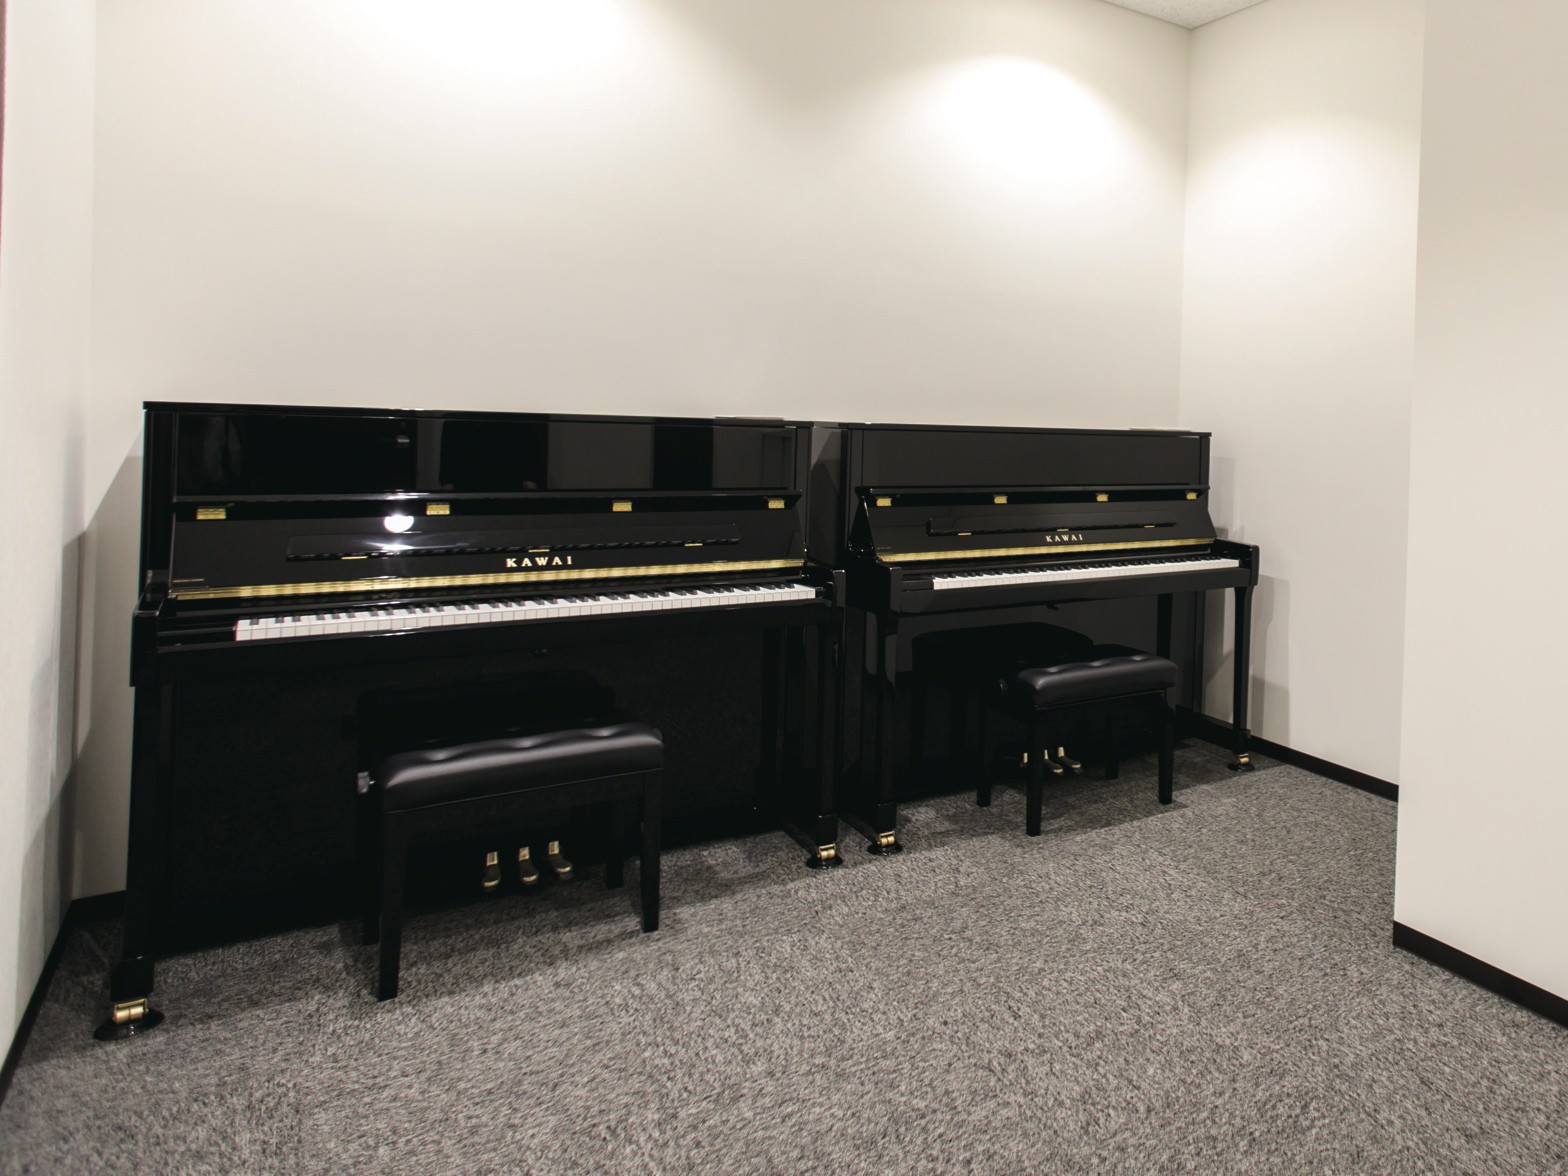 ピアノレッスン室。3つのグループレッスン室と18の個人レッスン室があり、授業の合間に個人練習も可能です。